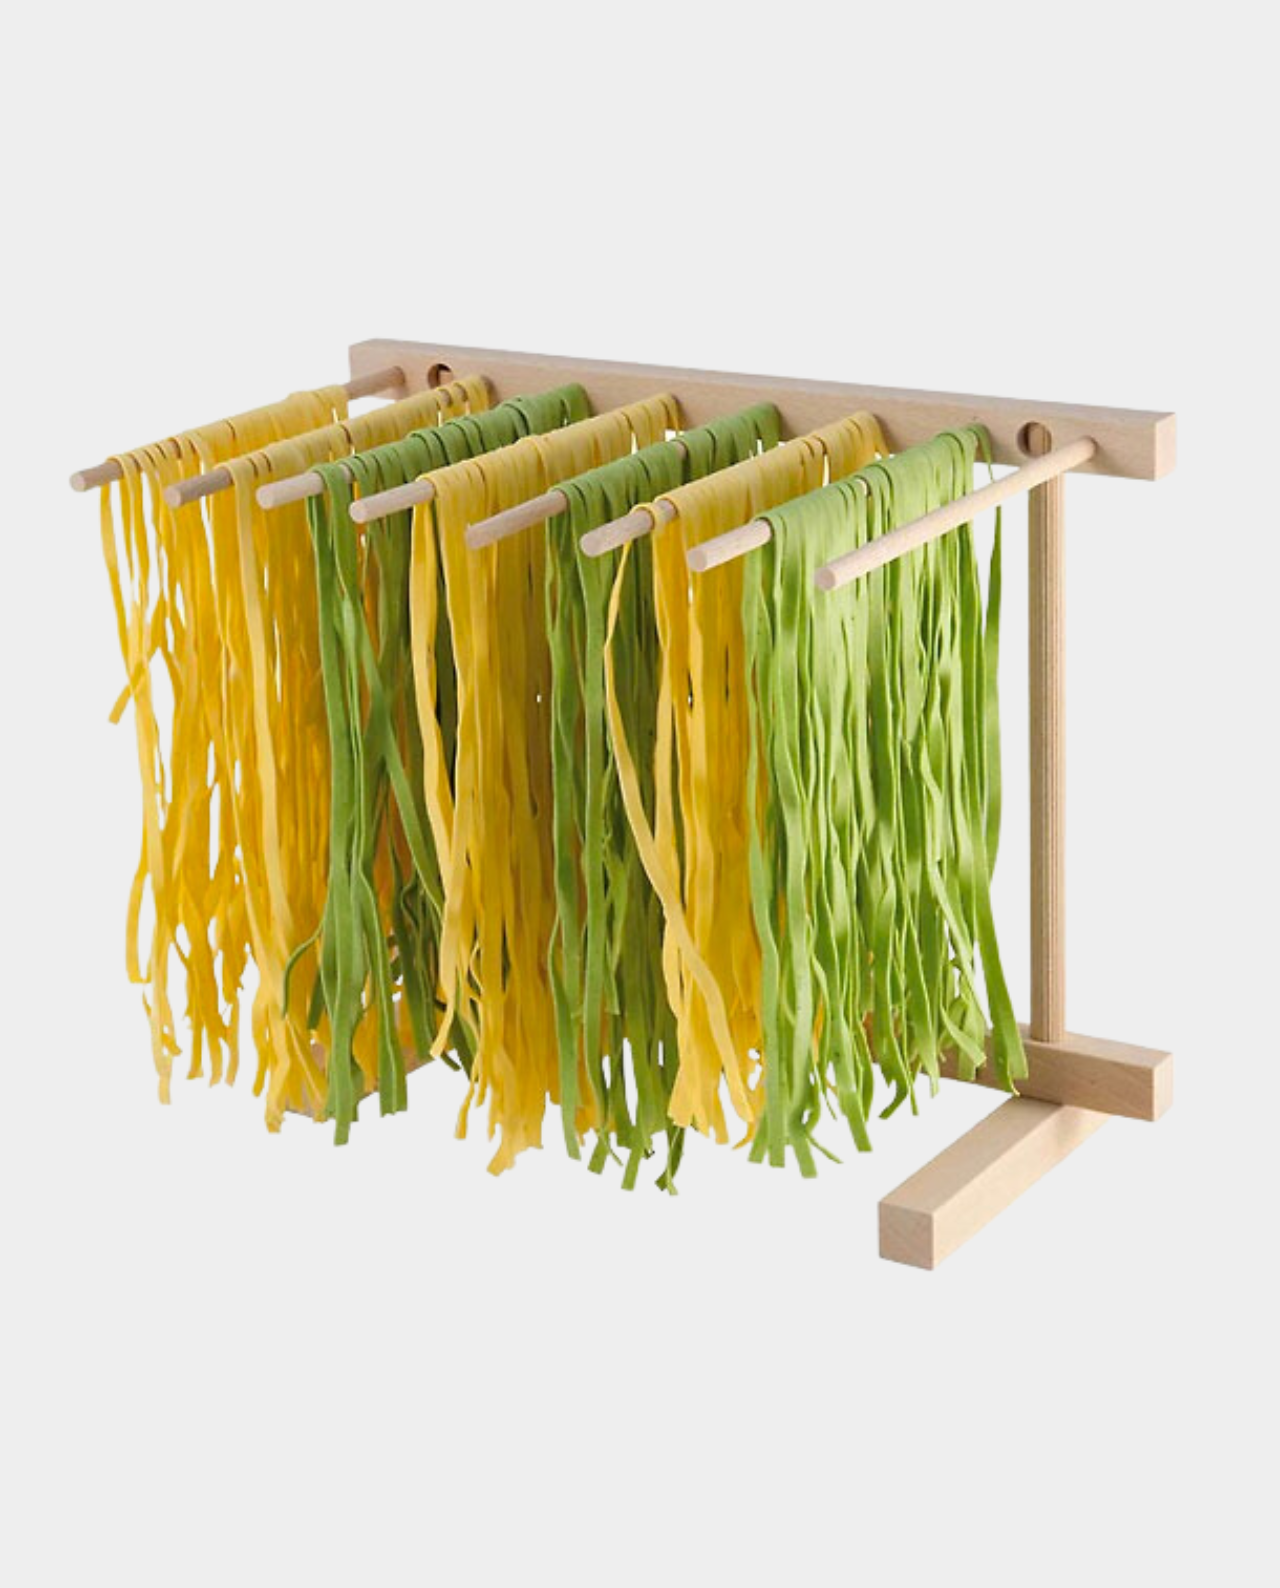 Italian Beechwood Collapsible Pasta Drying Rack